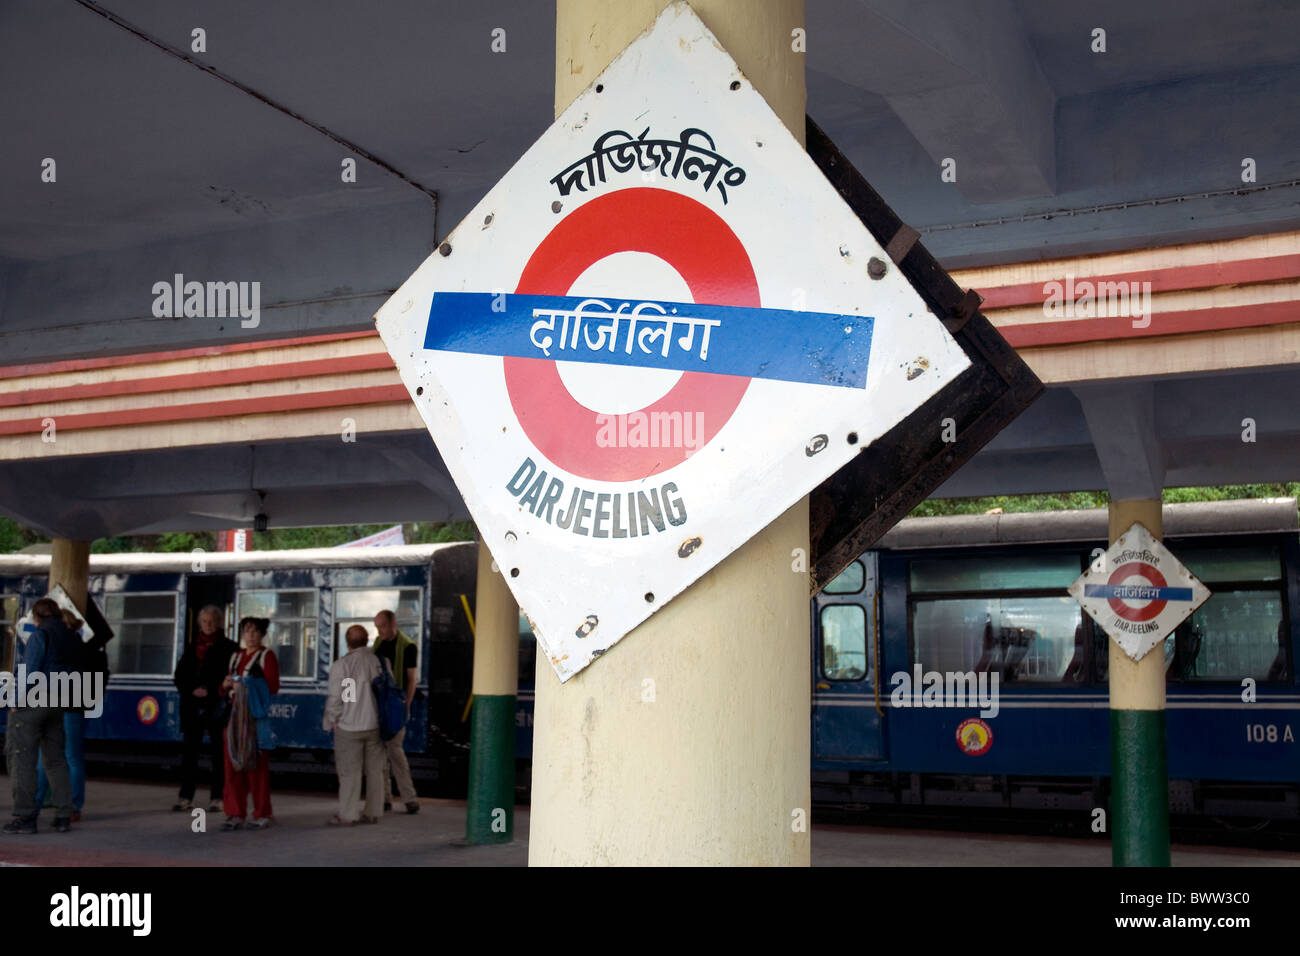 La gare de Darjeeling, célèbre pour les trains historiques fournissant le transport ferroviaire dans le haut Himalaya Banque D'Images